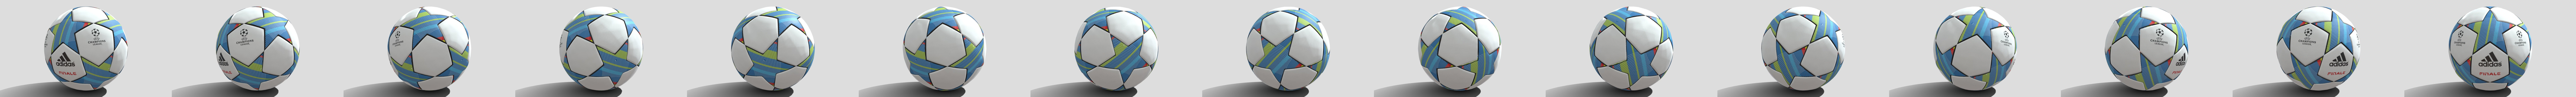 Soccer Ball Adidas Finale - Buy Royalty Free 3D model by Emilio.Gallo  (@Emilio.Gallo) [8b16916]